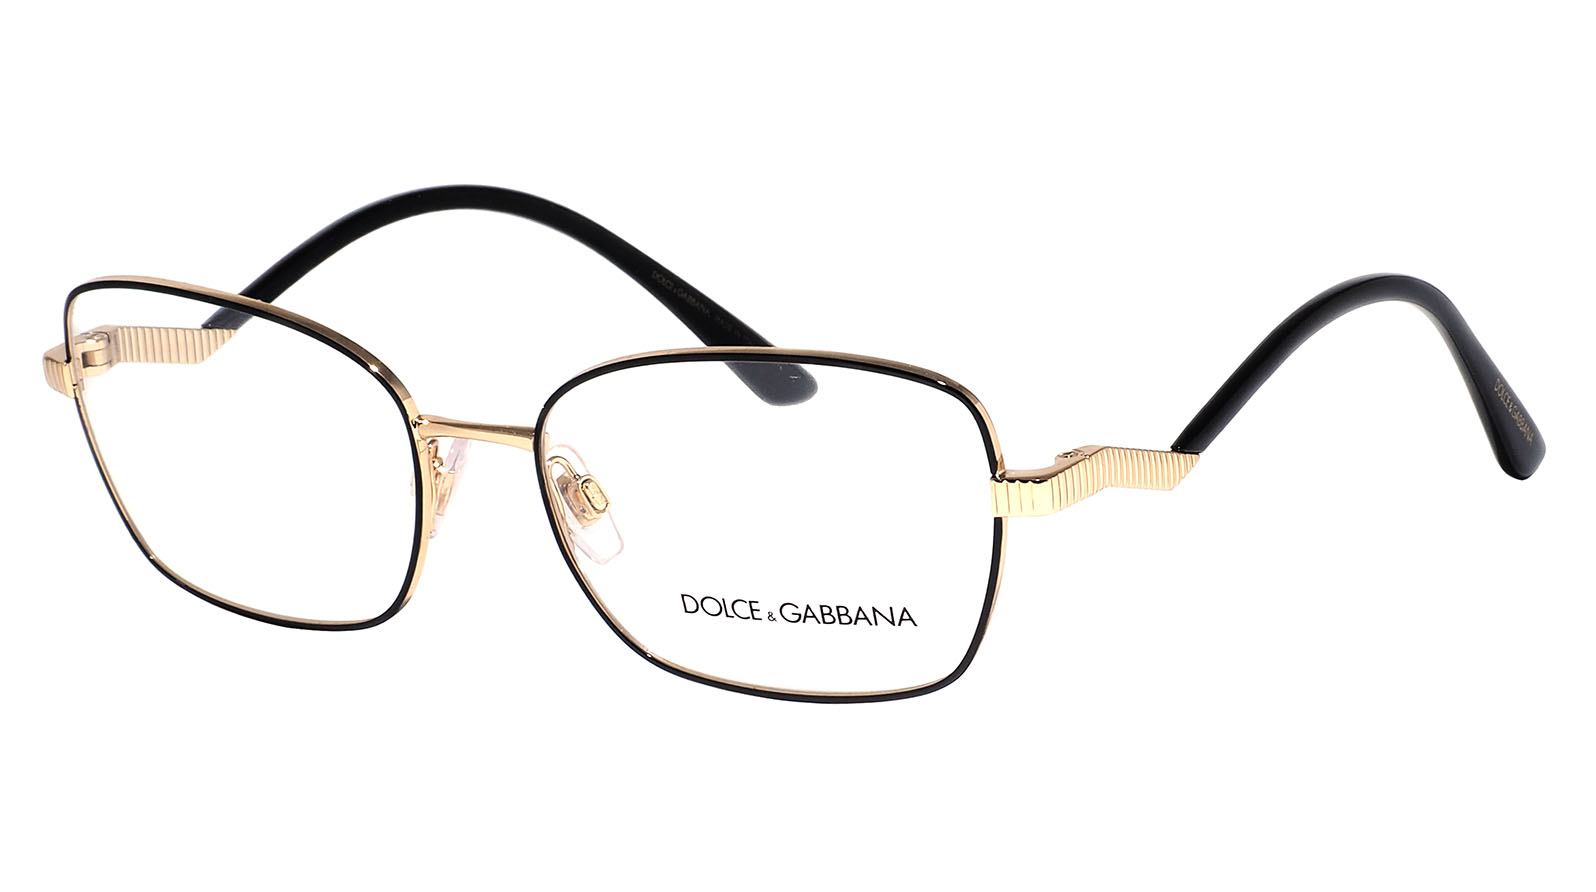 Dolce&Gabbana 1334 1334 очки солнцезащитные очки без оправы для женщин облака молния в форме солнцезащитных очков облачные кисточки солнцезащитные очки